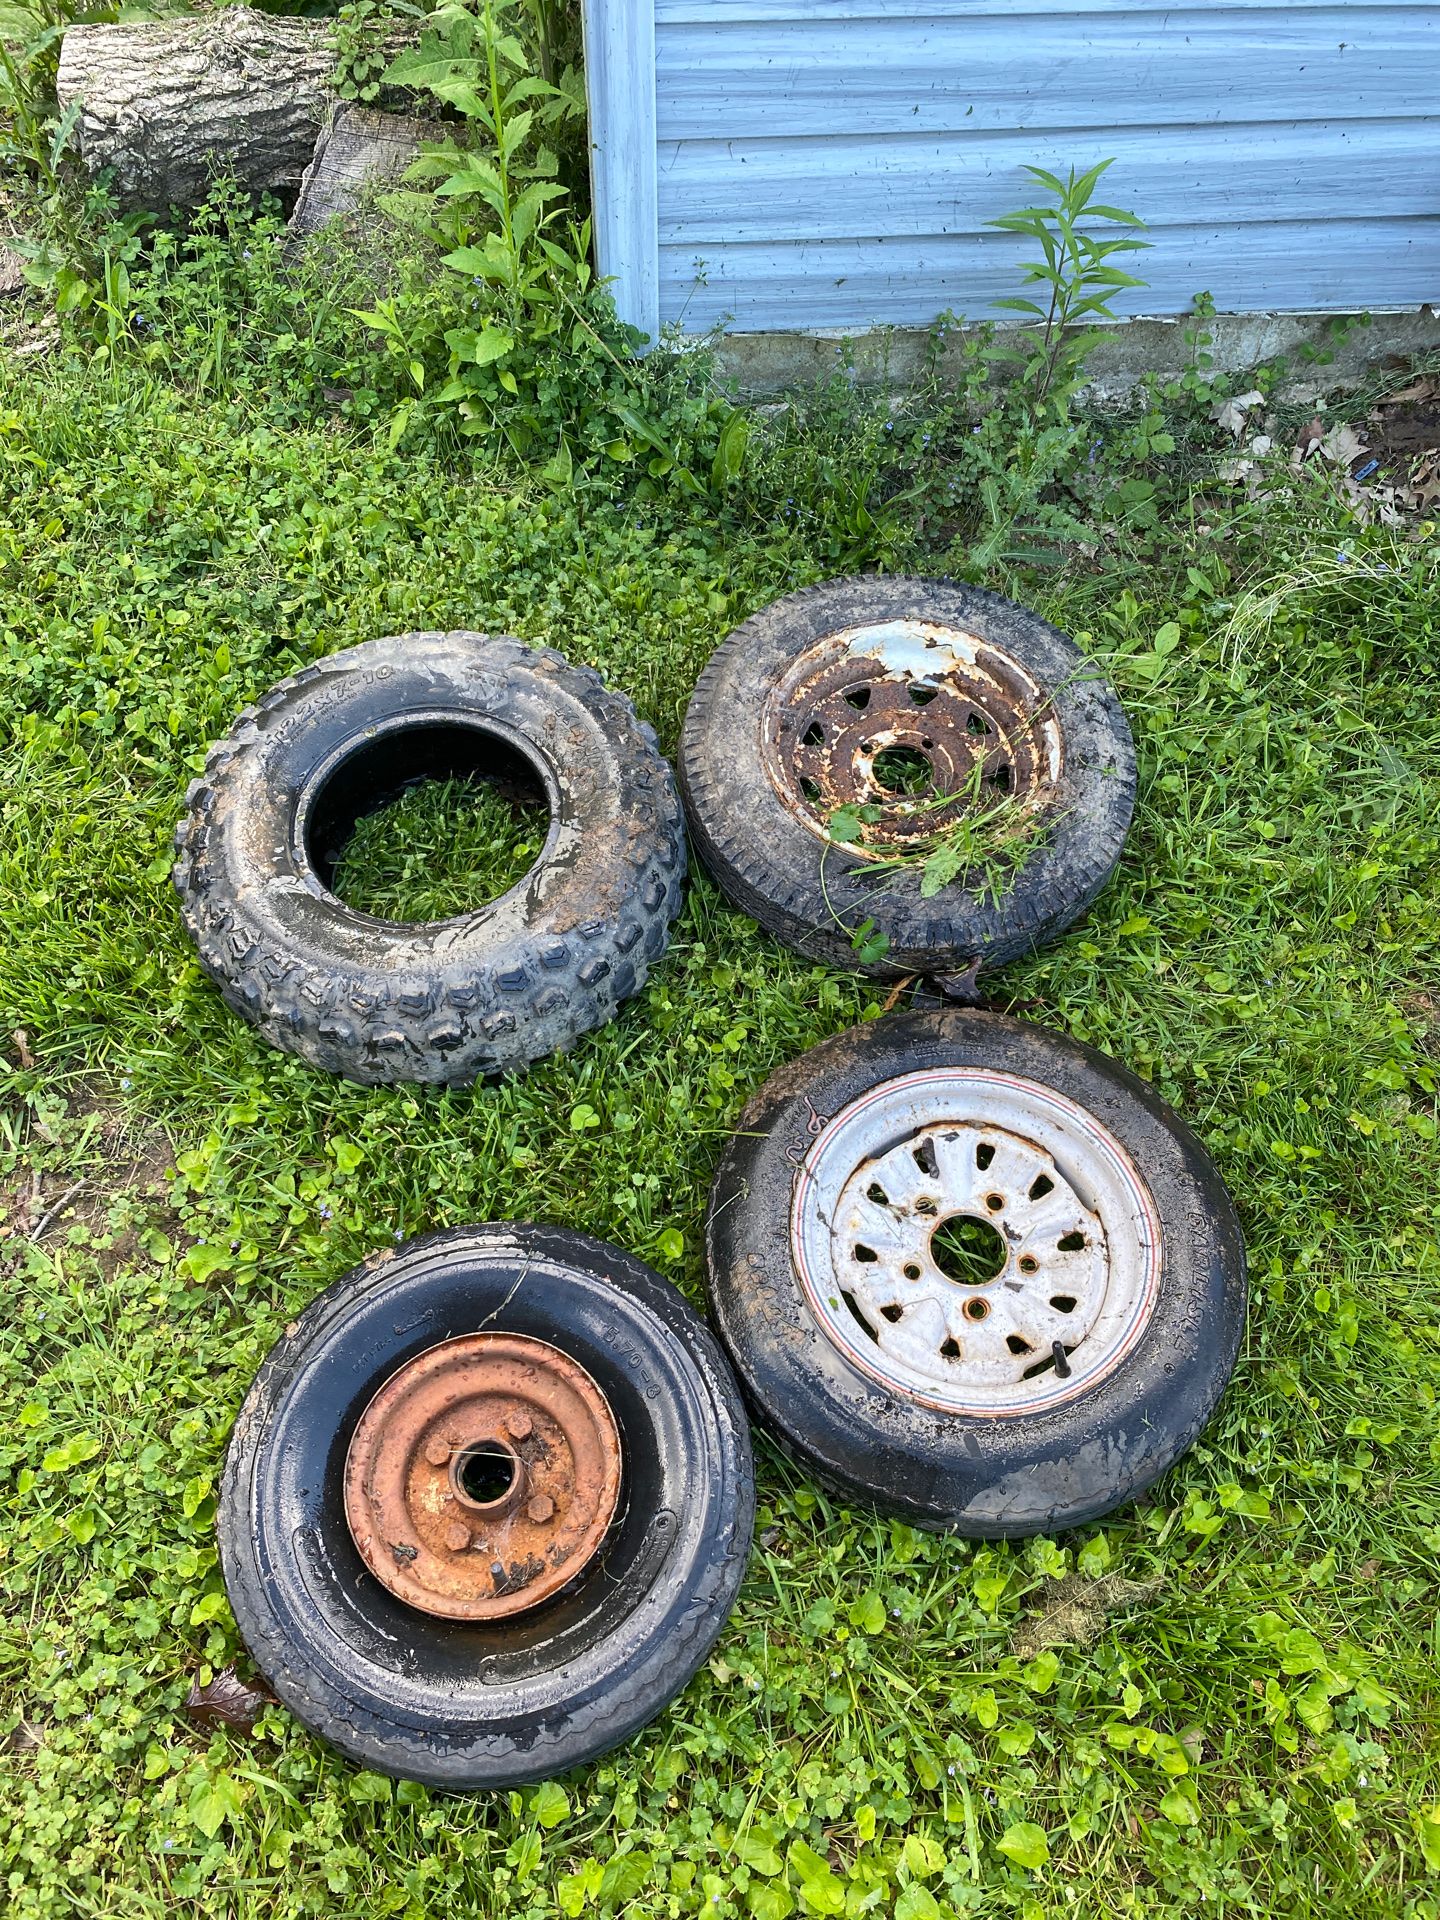 4 random little trailer tires